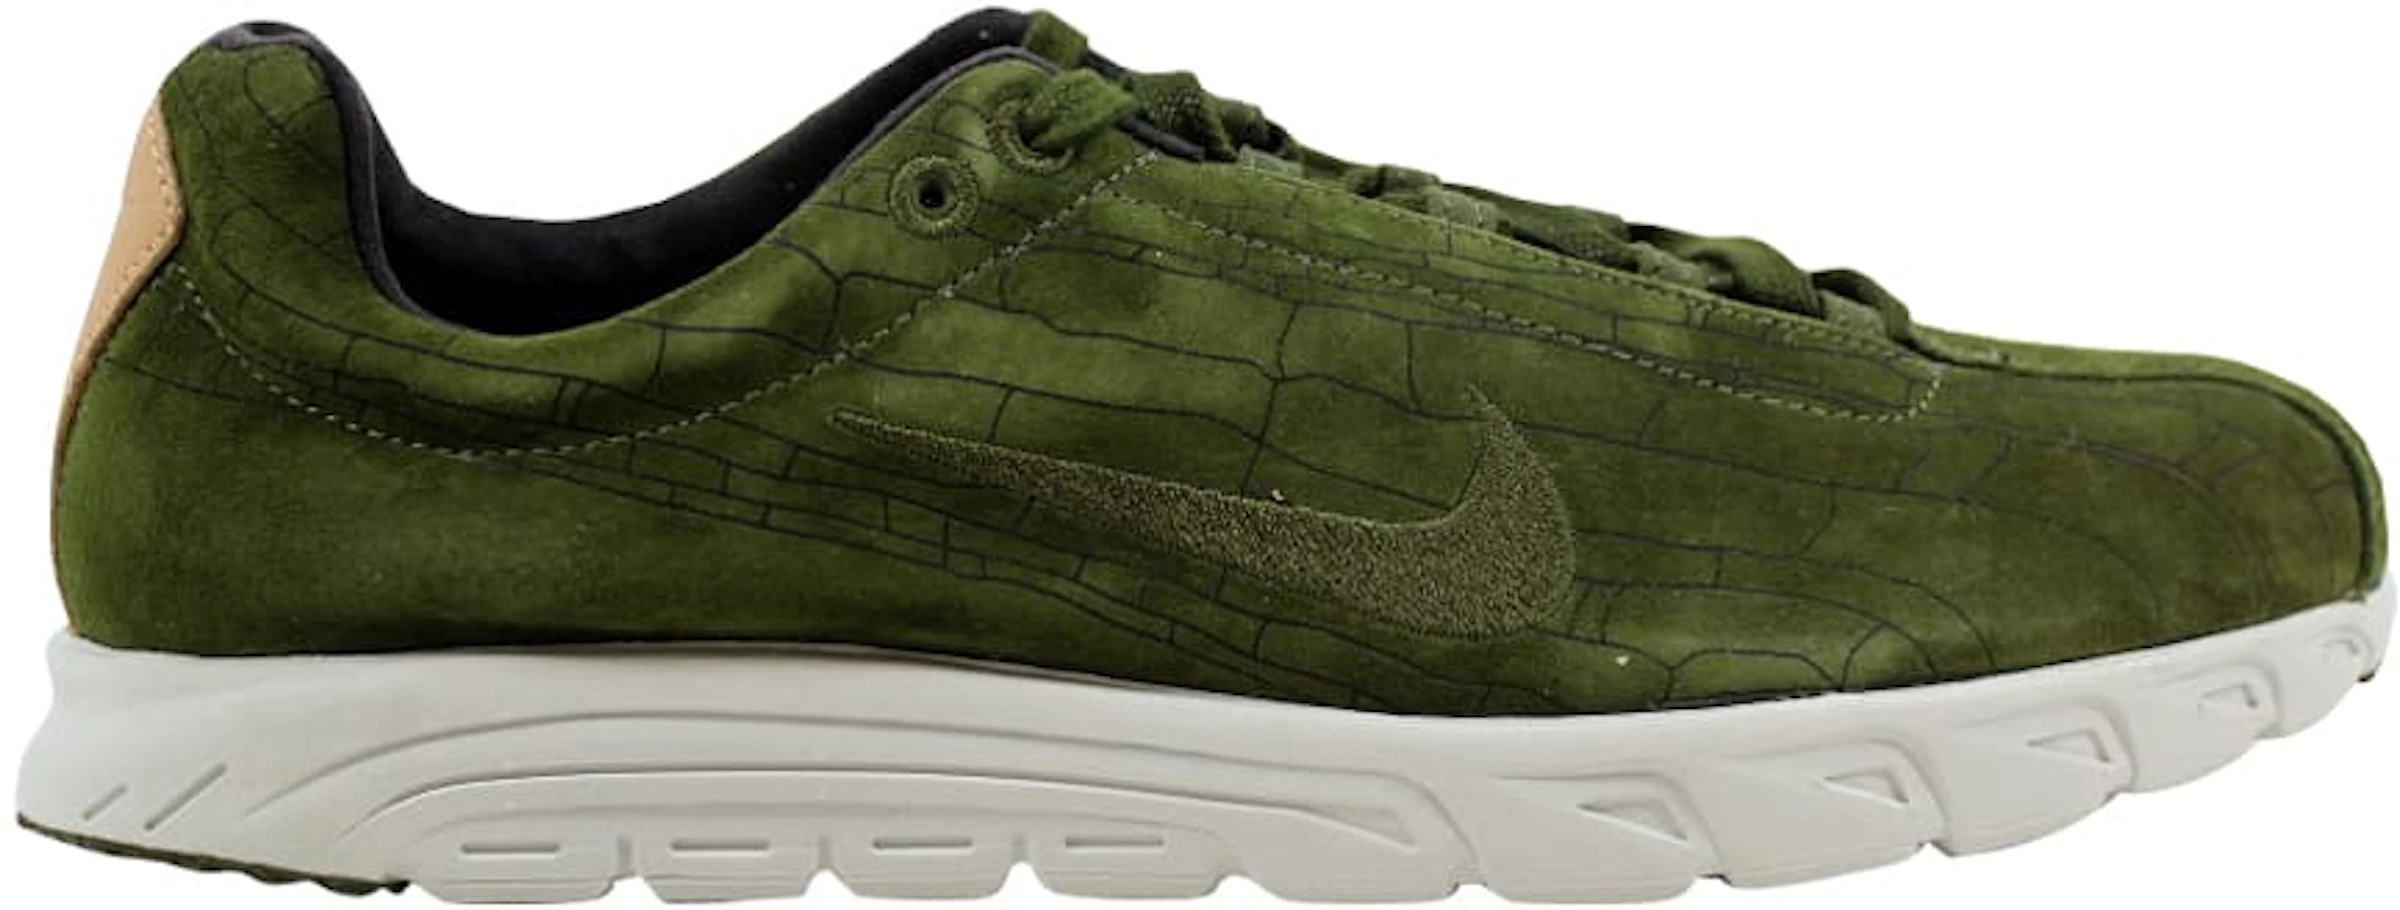 Parcial fama Sumergir Nike Mayfly Leather Premium Legion Green/Legion Green - 816548-300 - ES